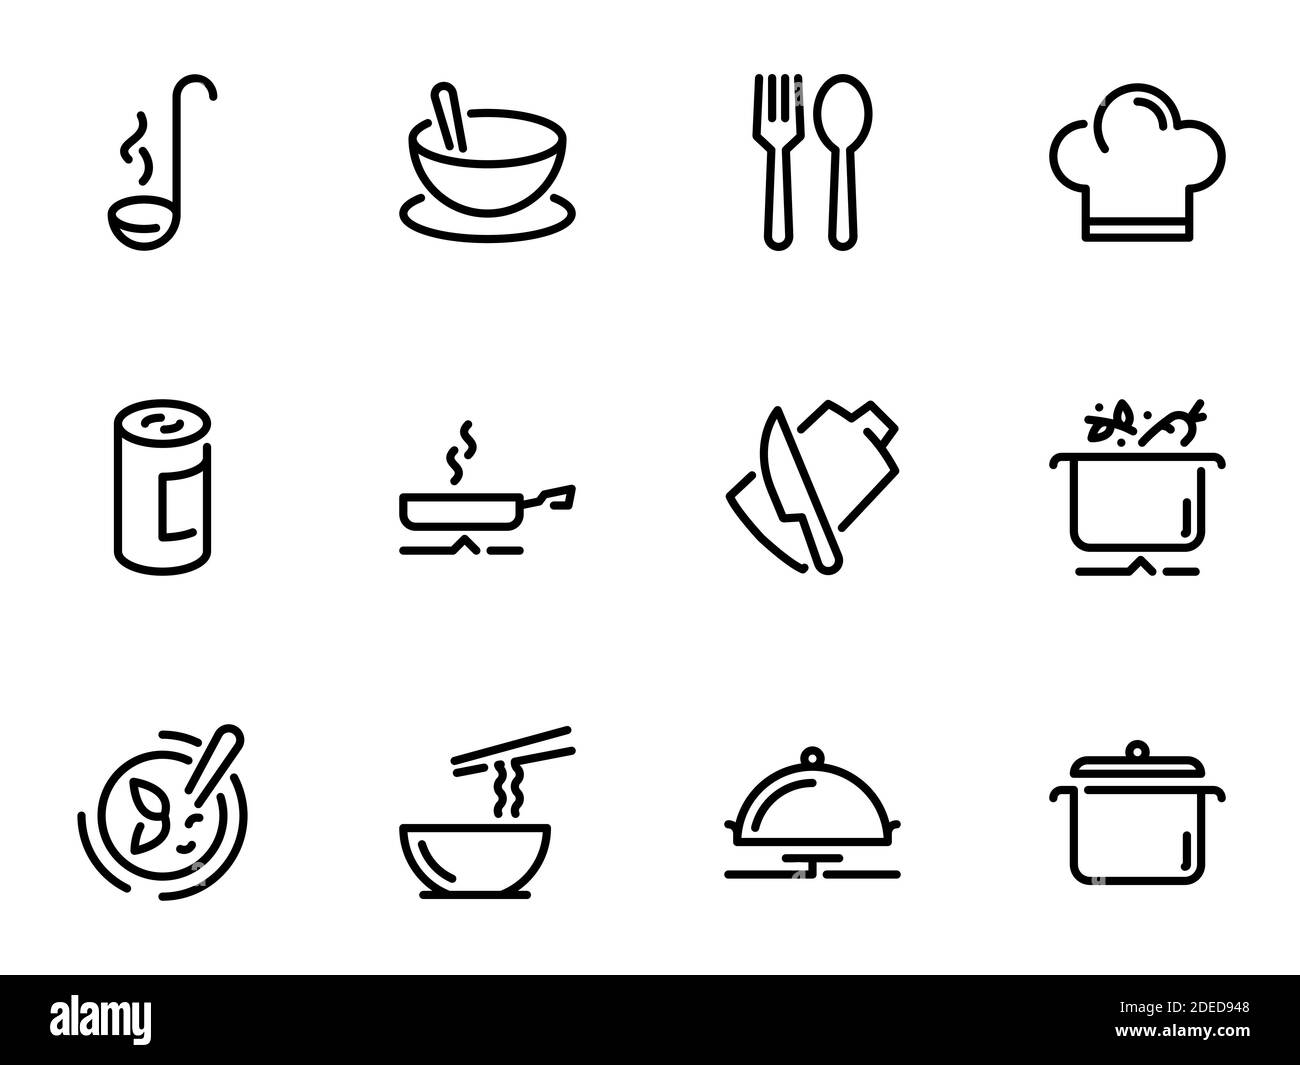 Ensemble d'icônes vectorielles noires, isolées sur fond blanc, sur le thème préparation des ingrédients pour la cuisson de la soupe Illustration de Vecteur